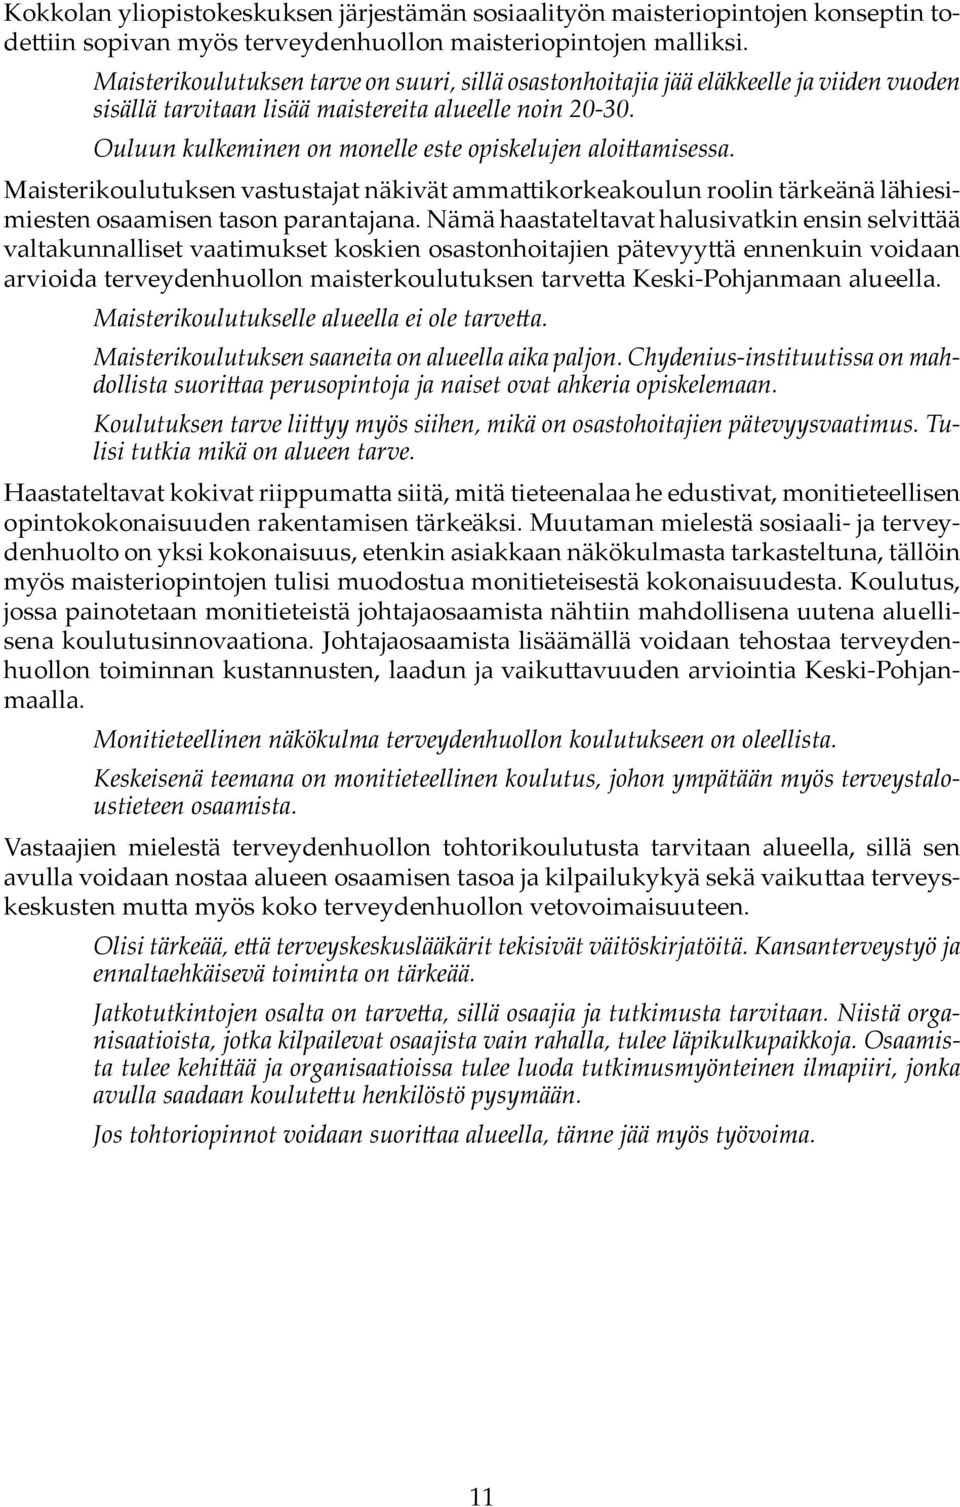 Ouluun kulkeminen on monelle este opiskelujen aloi amisessa. Maisterikoulutuksen vastustajat näkivät amma ikorkeakoulun roolin tärkeänä lähiesimiesten osaamisen tason parantajana.